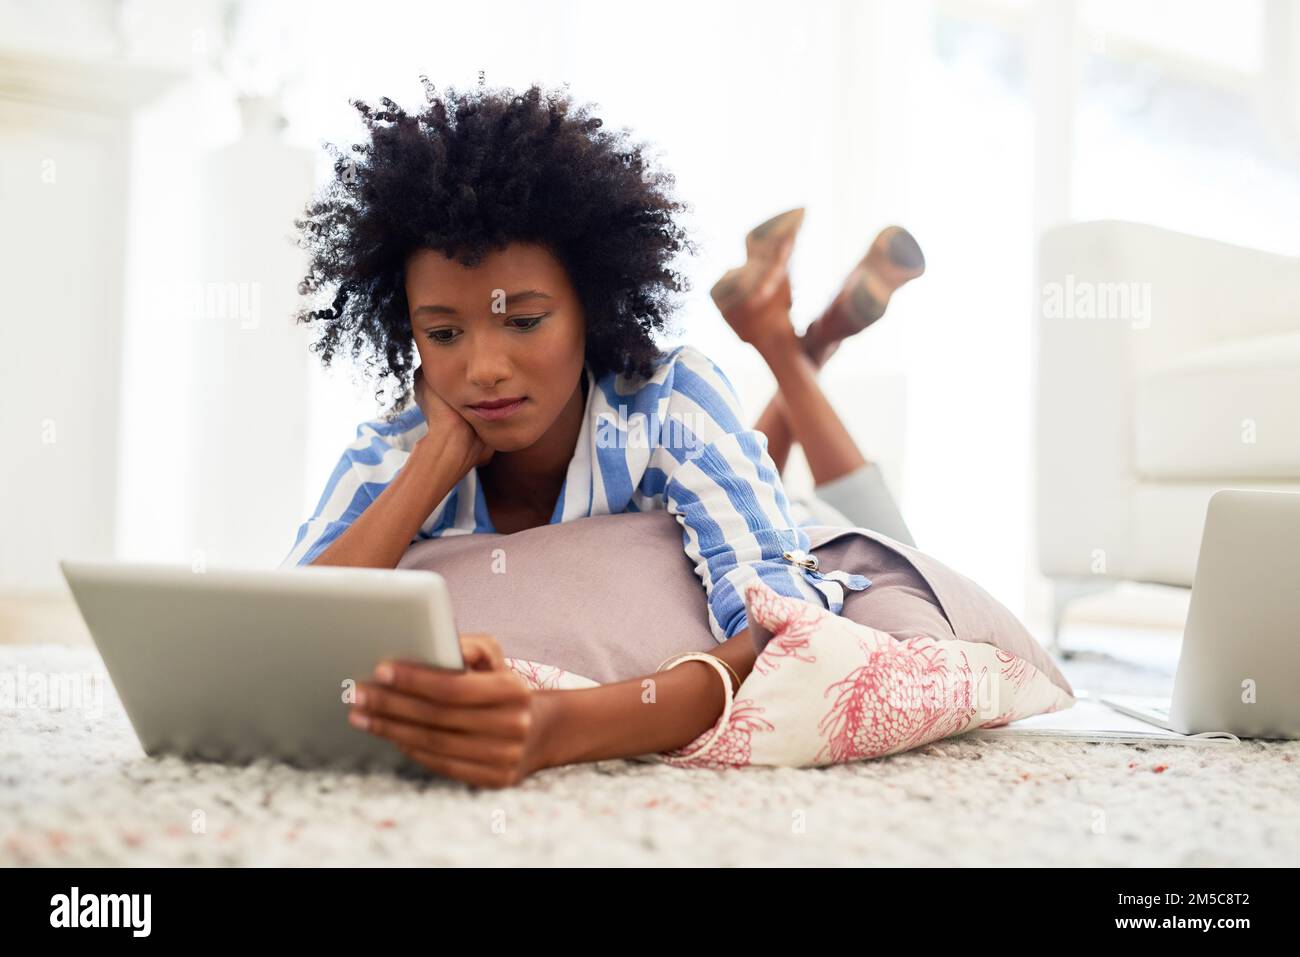 Portalo a casa con facilità. una giovane donna che usa un tablet digitale a casa. Foto Stock